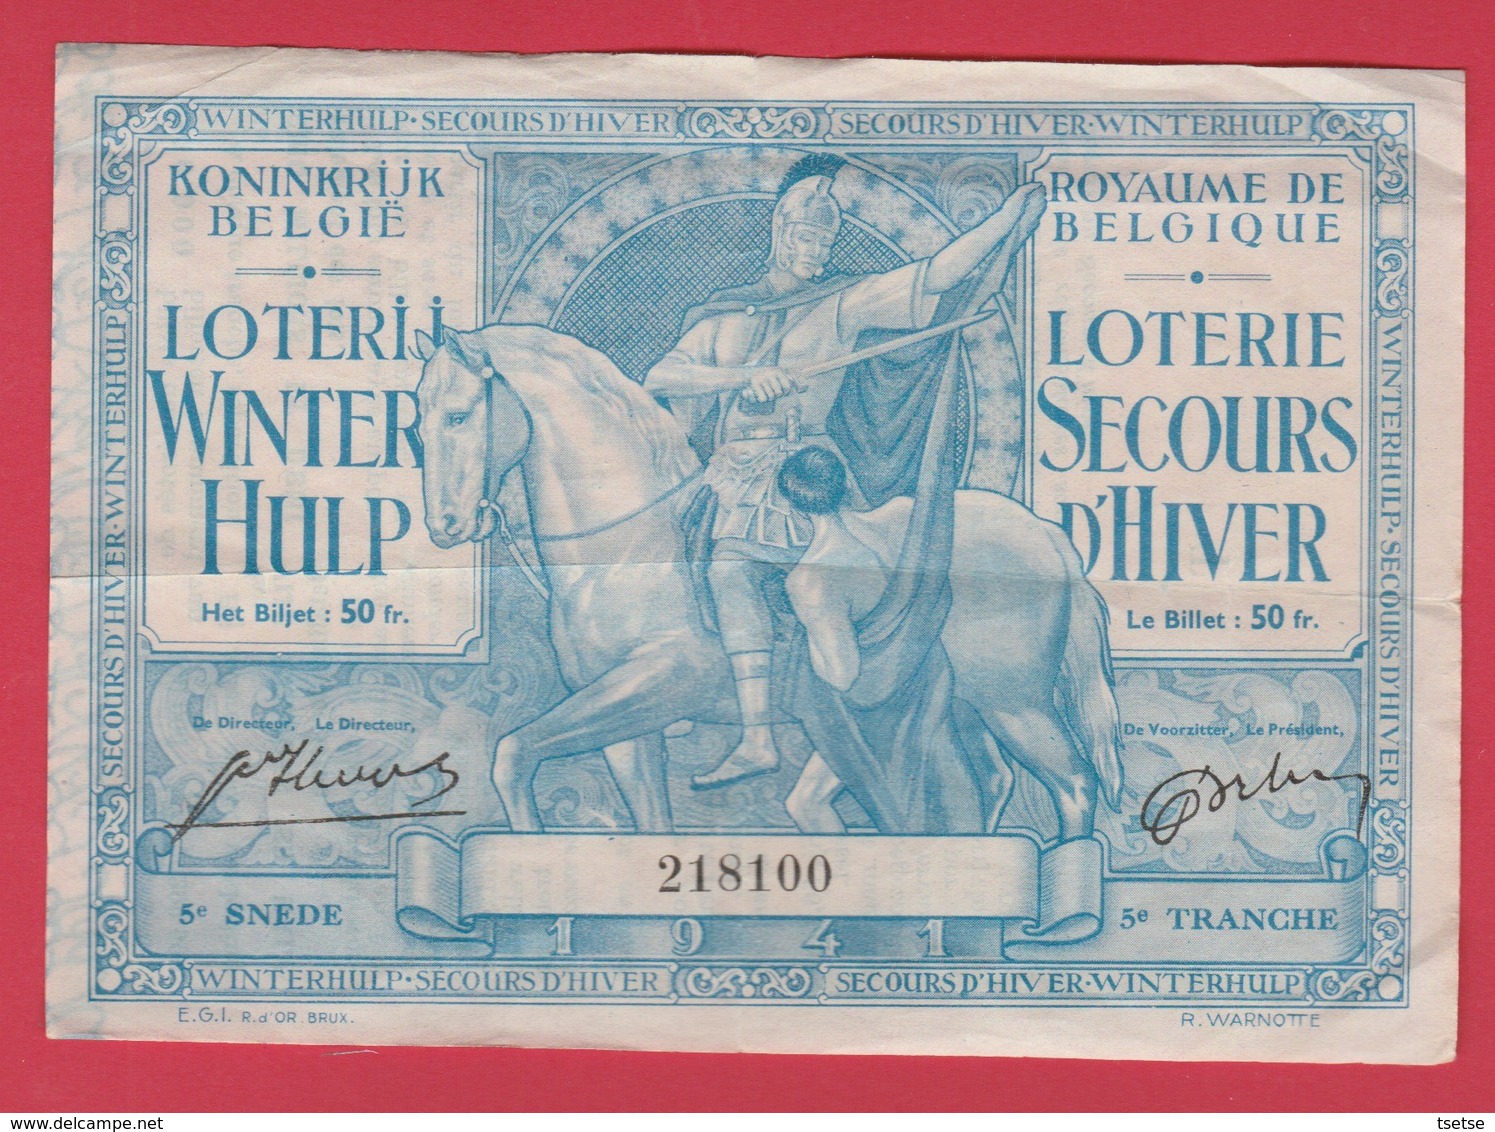 Loterie Secours D'Hiver , Billet 50 Fr / Lorerij Winter Hulp, Biljet 50 Fr - 1941 ( Voir Verso ) - War 1939-45